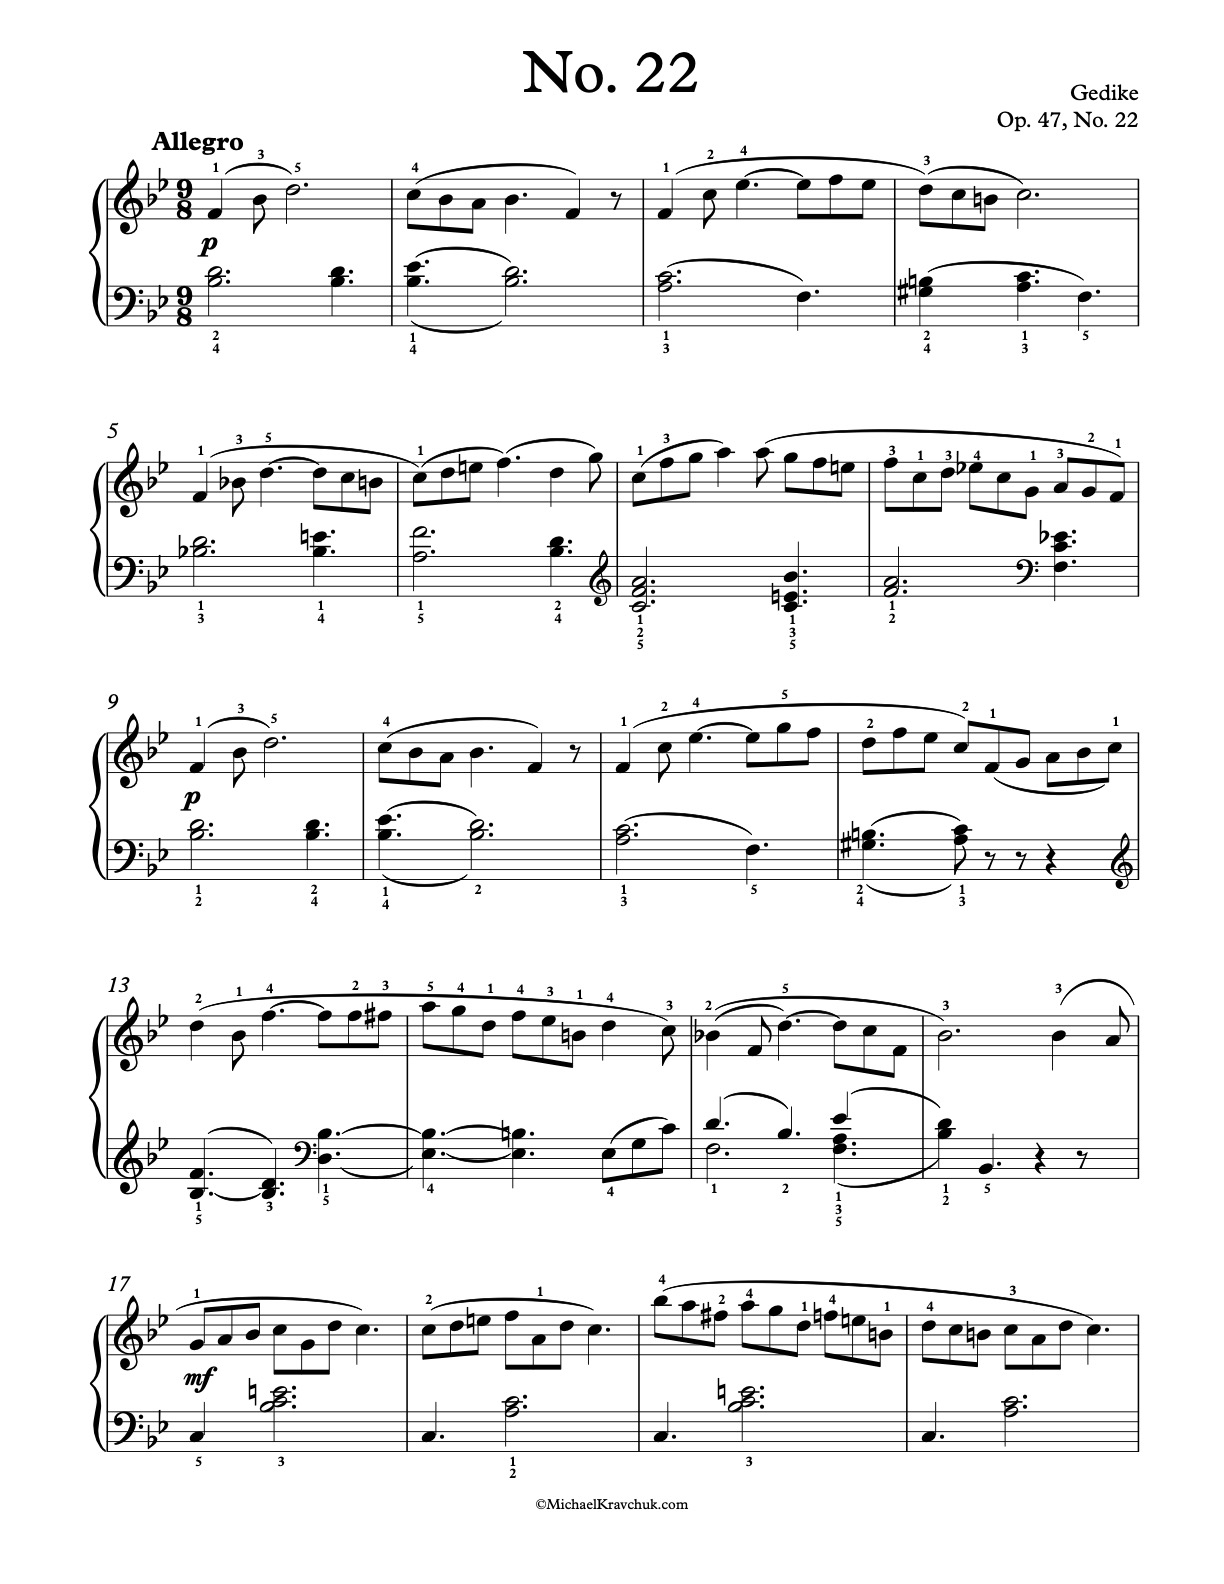 Op. 47, No. 22 Piano Sheet Music